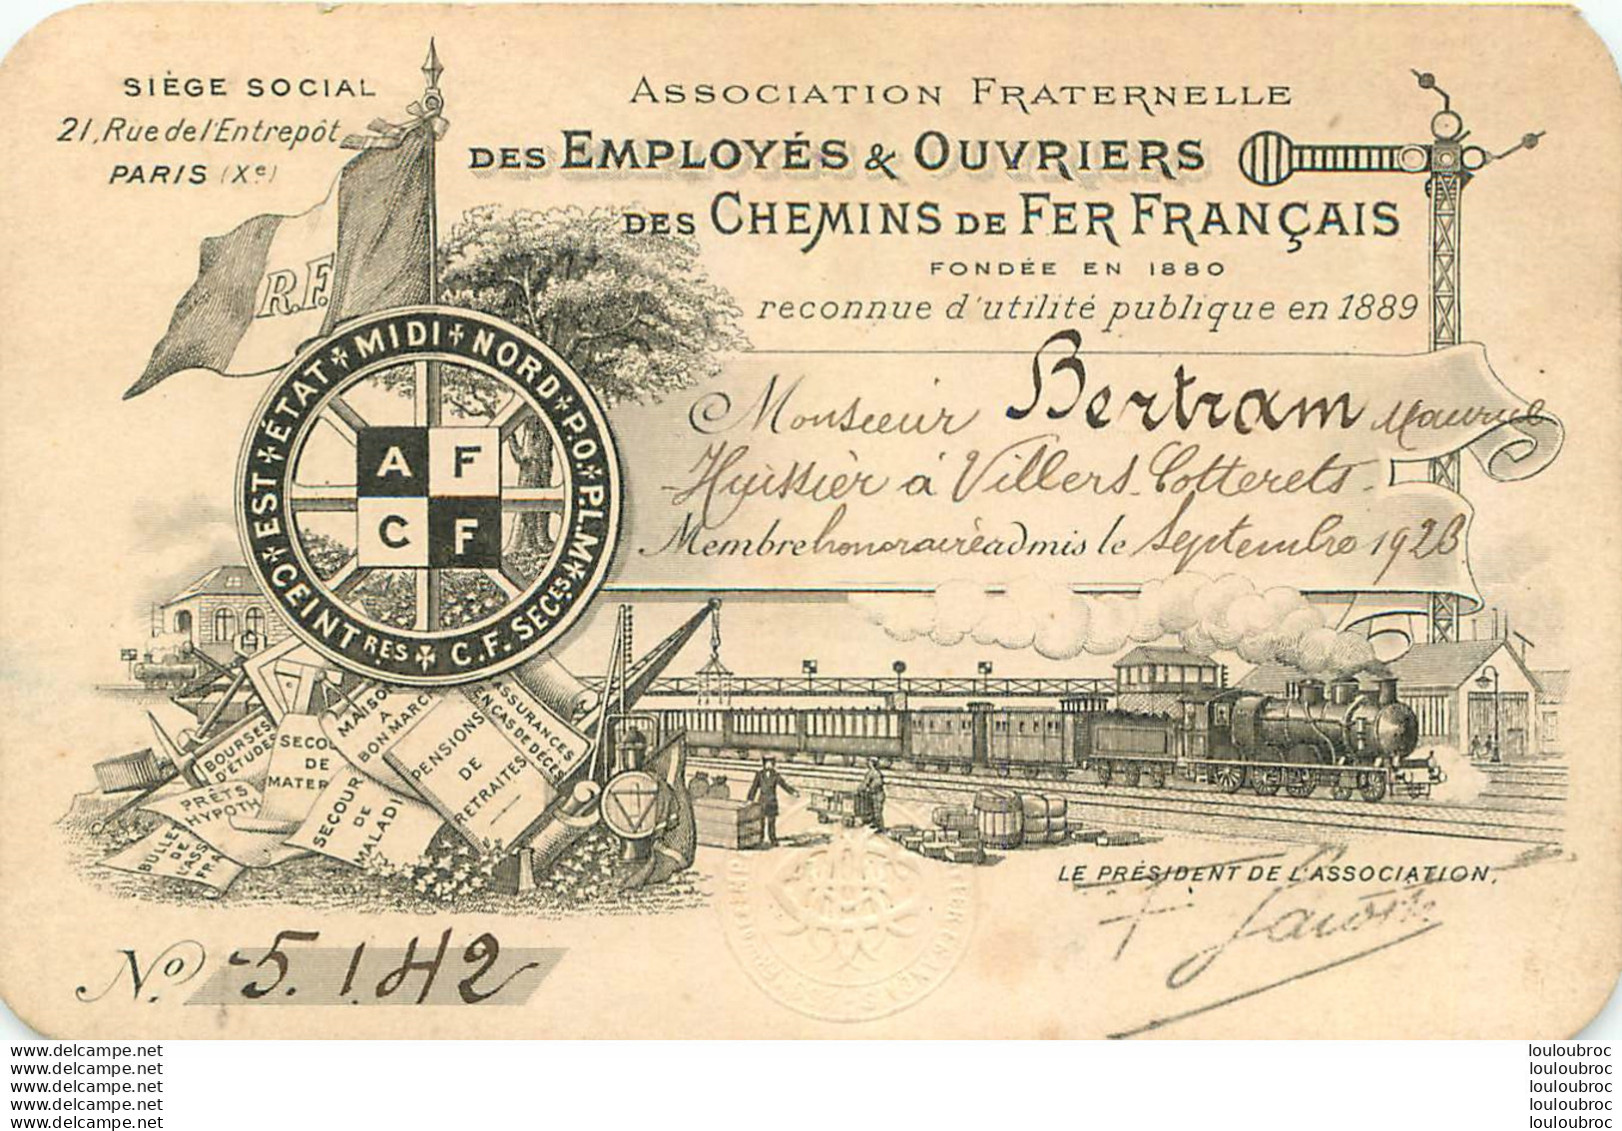 CARTE D'IDENTITE ASSOCIATION FRATERNELLE DES EMPLOYES DES CHEMINS DE FER FRANCAIS MONSIEUR BERTRAM 1928 - Railway